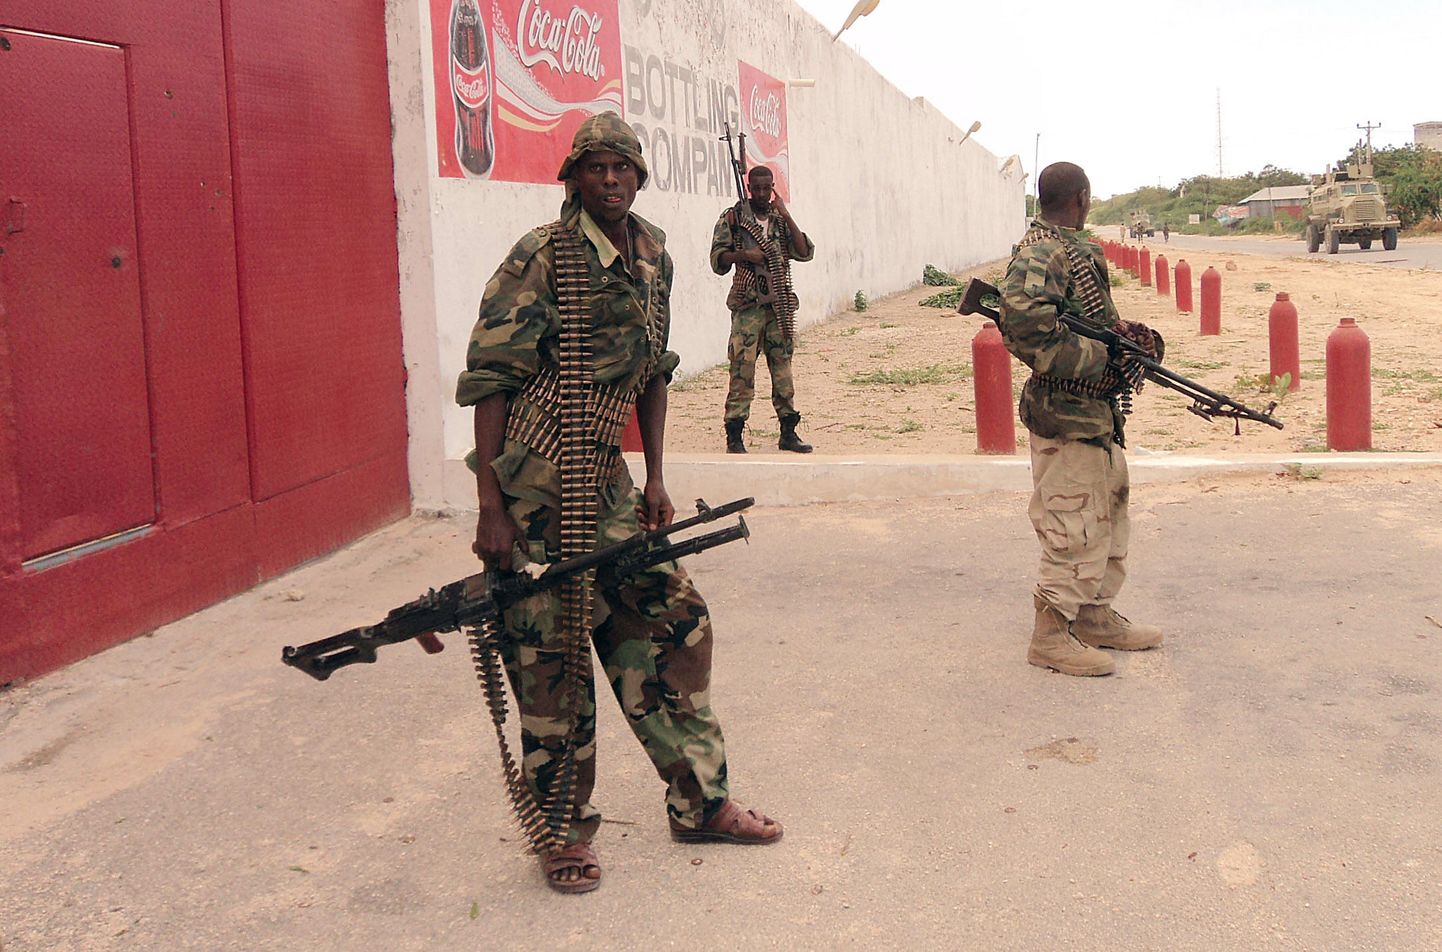 Somaalia sõjav'elased riigi pealinnas Muqdishos valvamas.